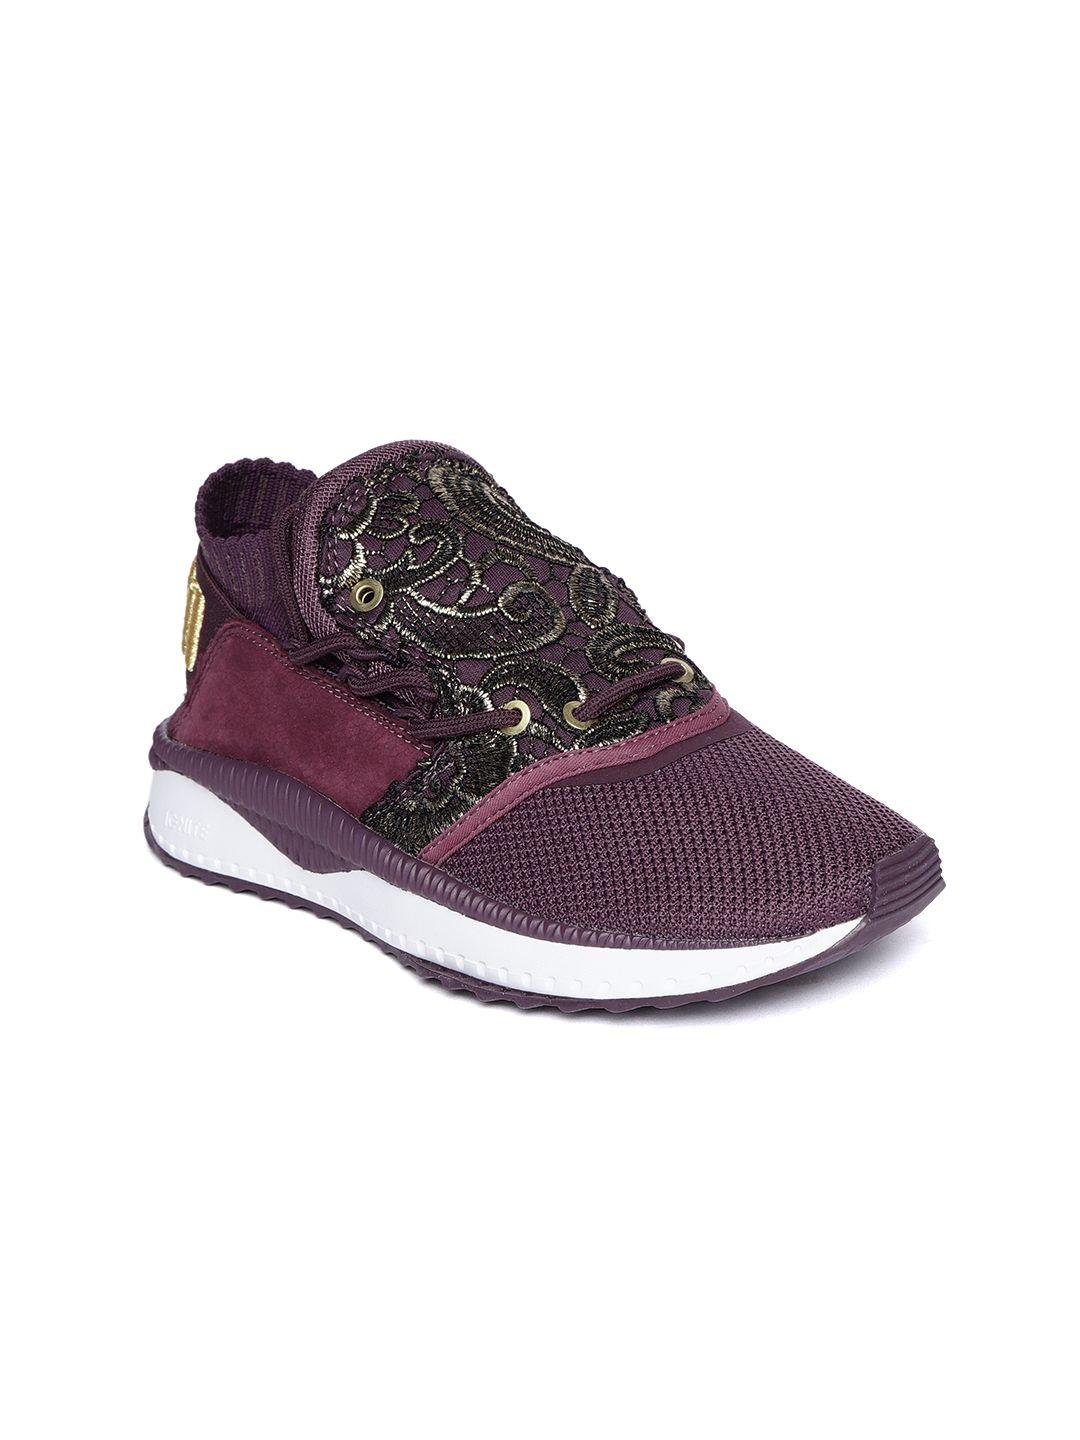 puma women purple sneakers